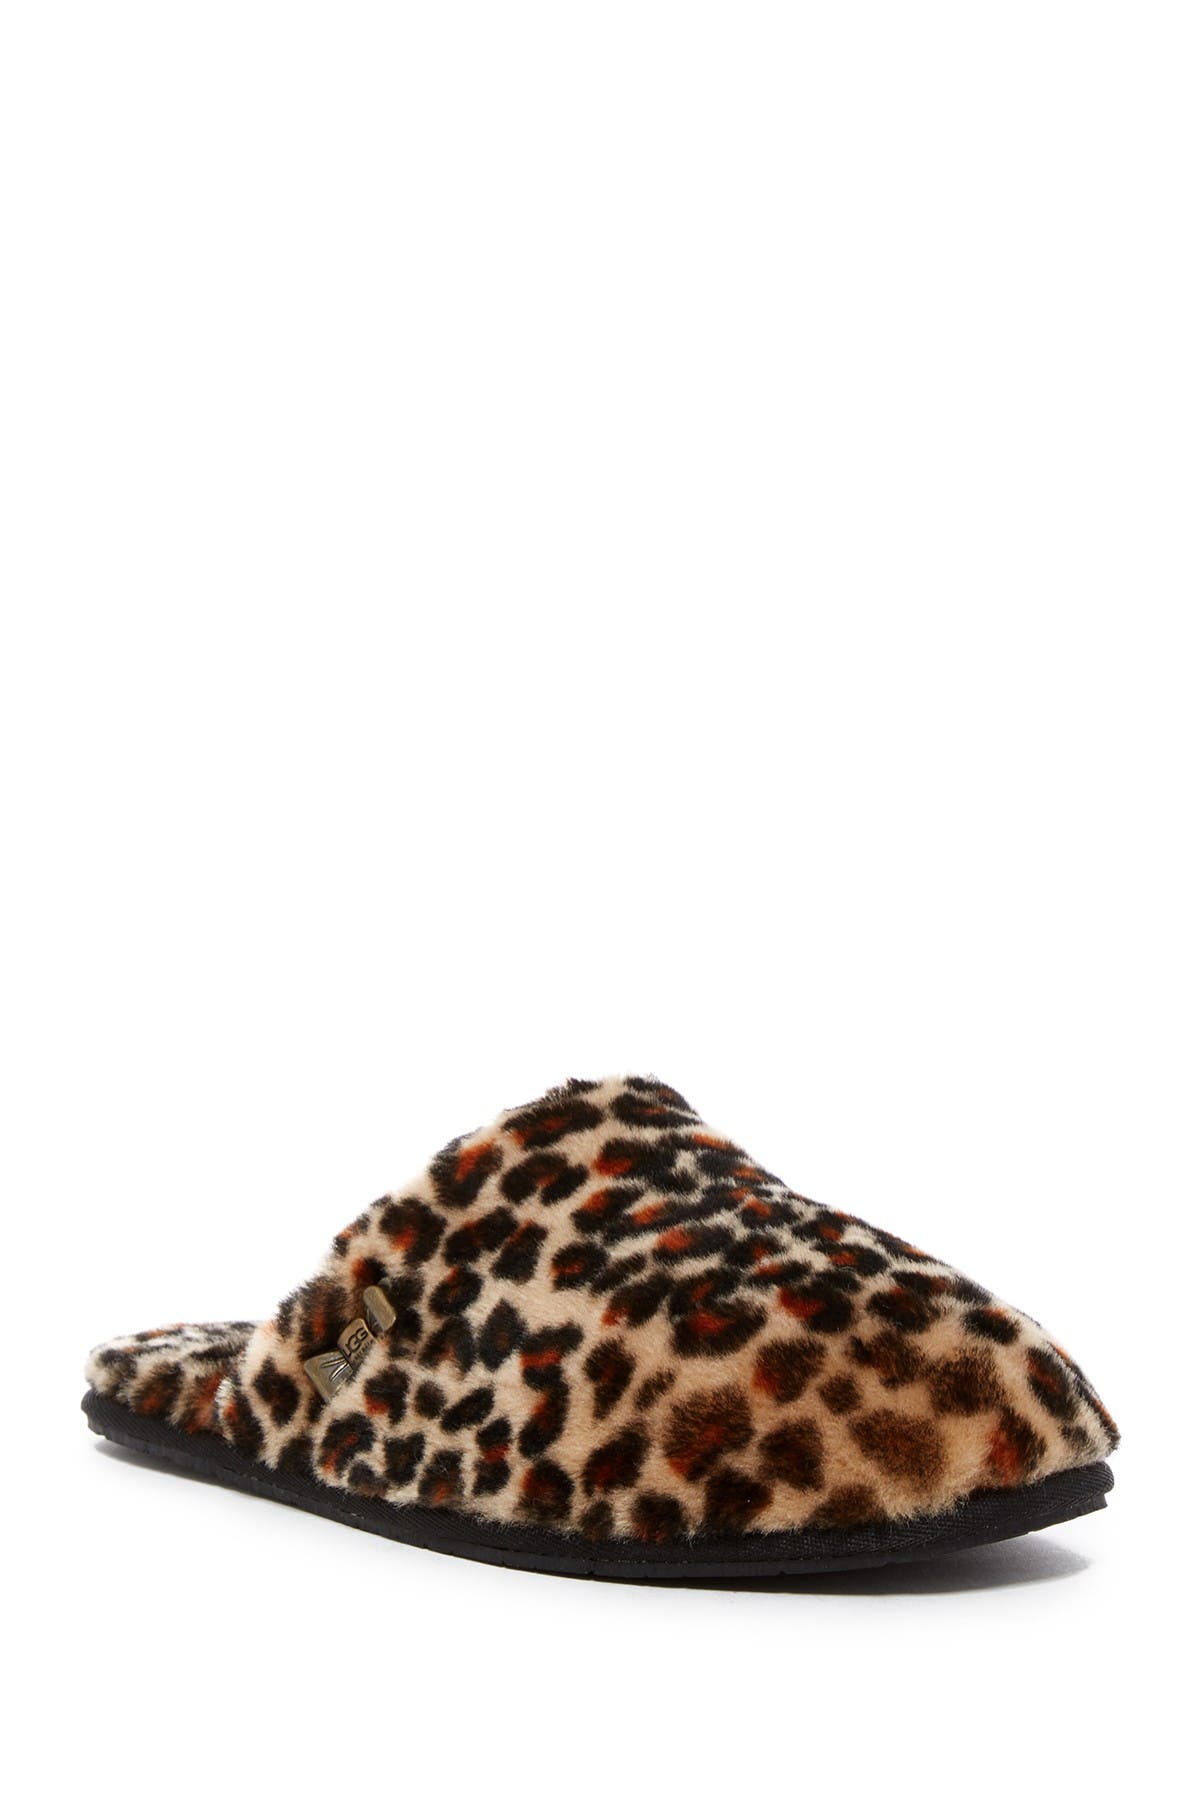 ugg leopard slippers nordstrom